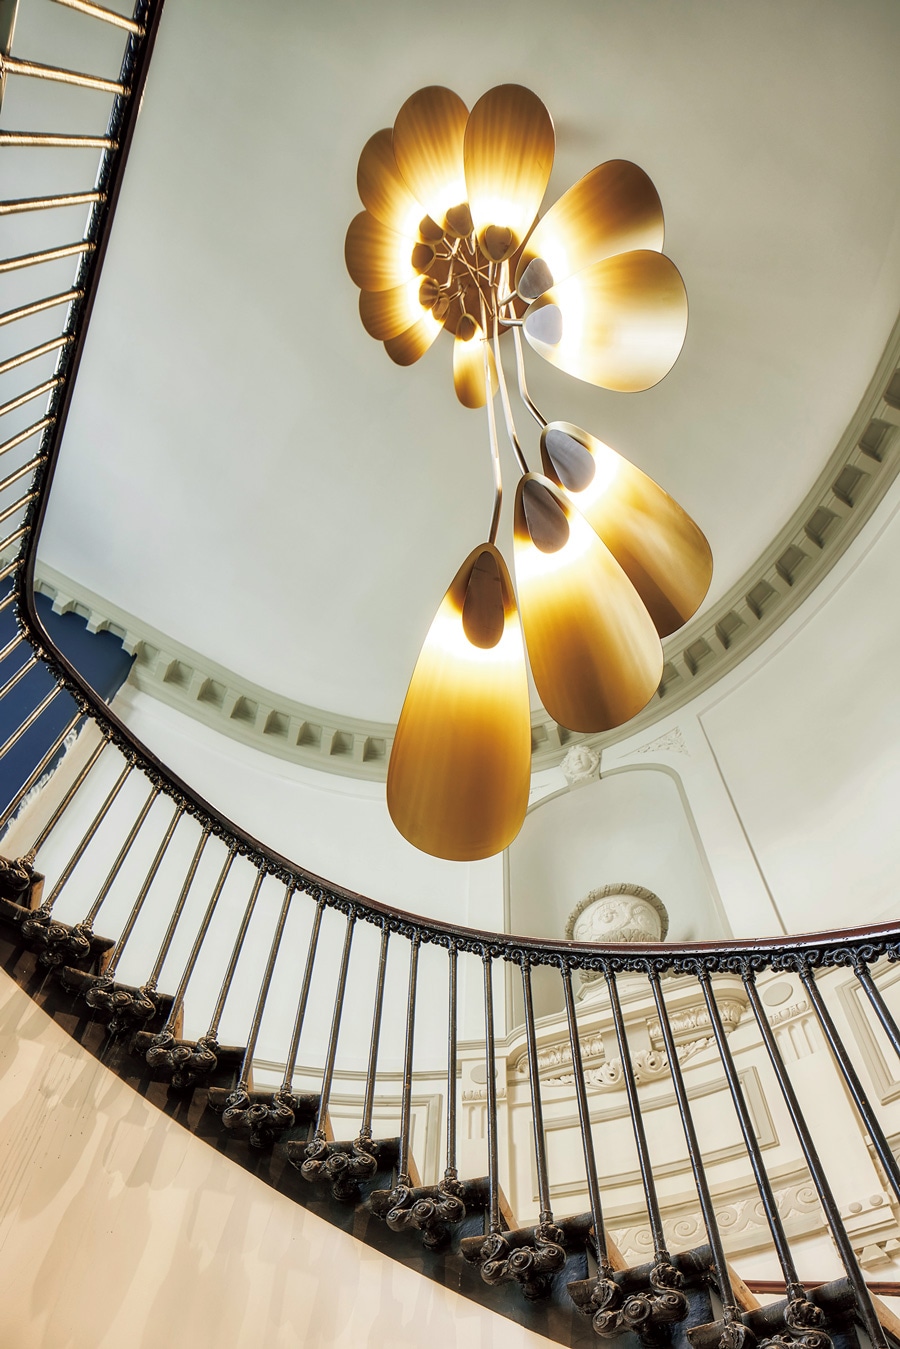 内装を手がけたのは建築家、舞台美術家のコンスタンス・ギセ。エントランスの階段で上品な光を放つシャンデリアも彼女のデザインによる。